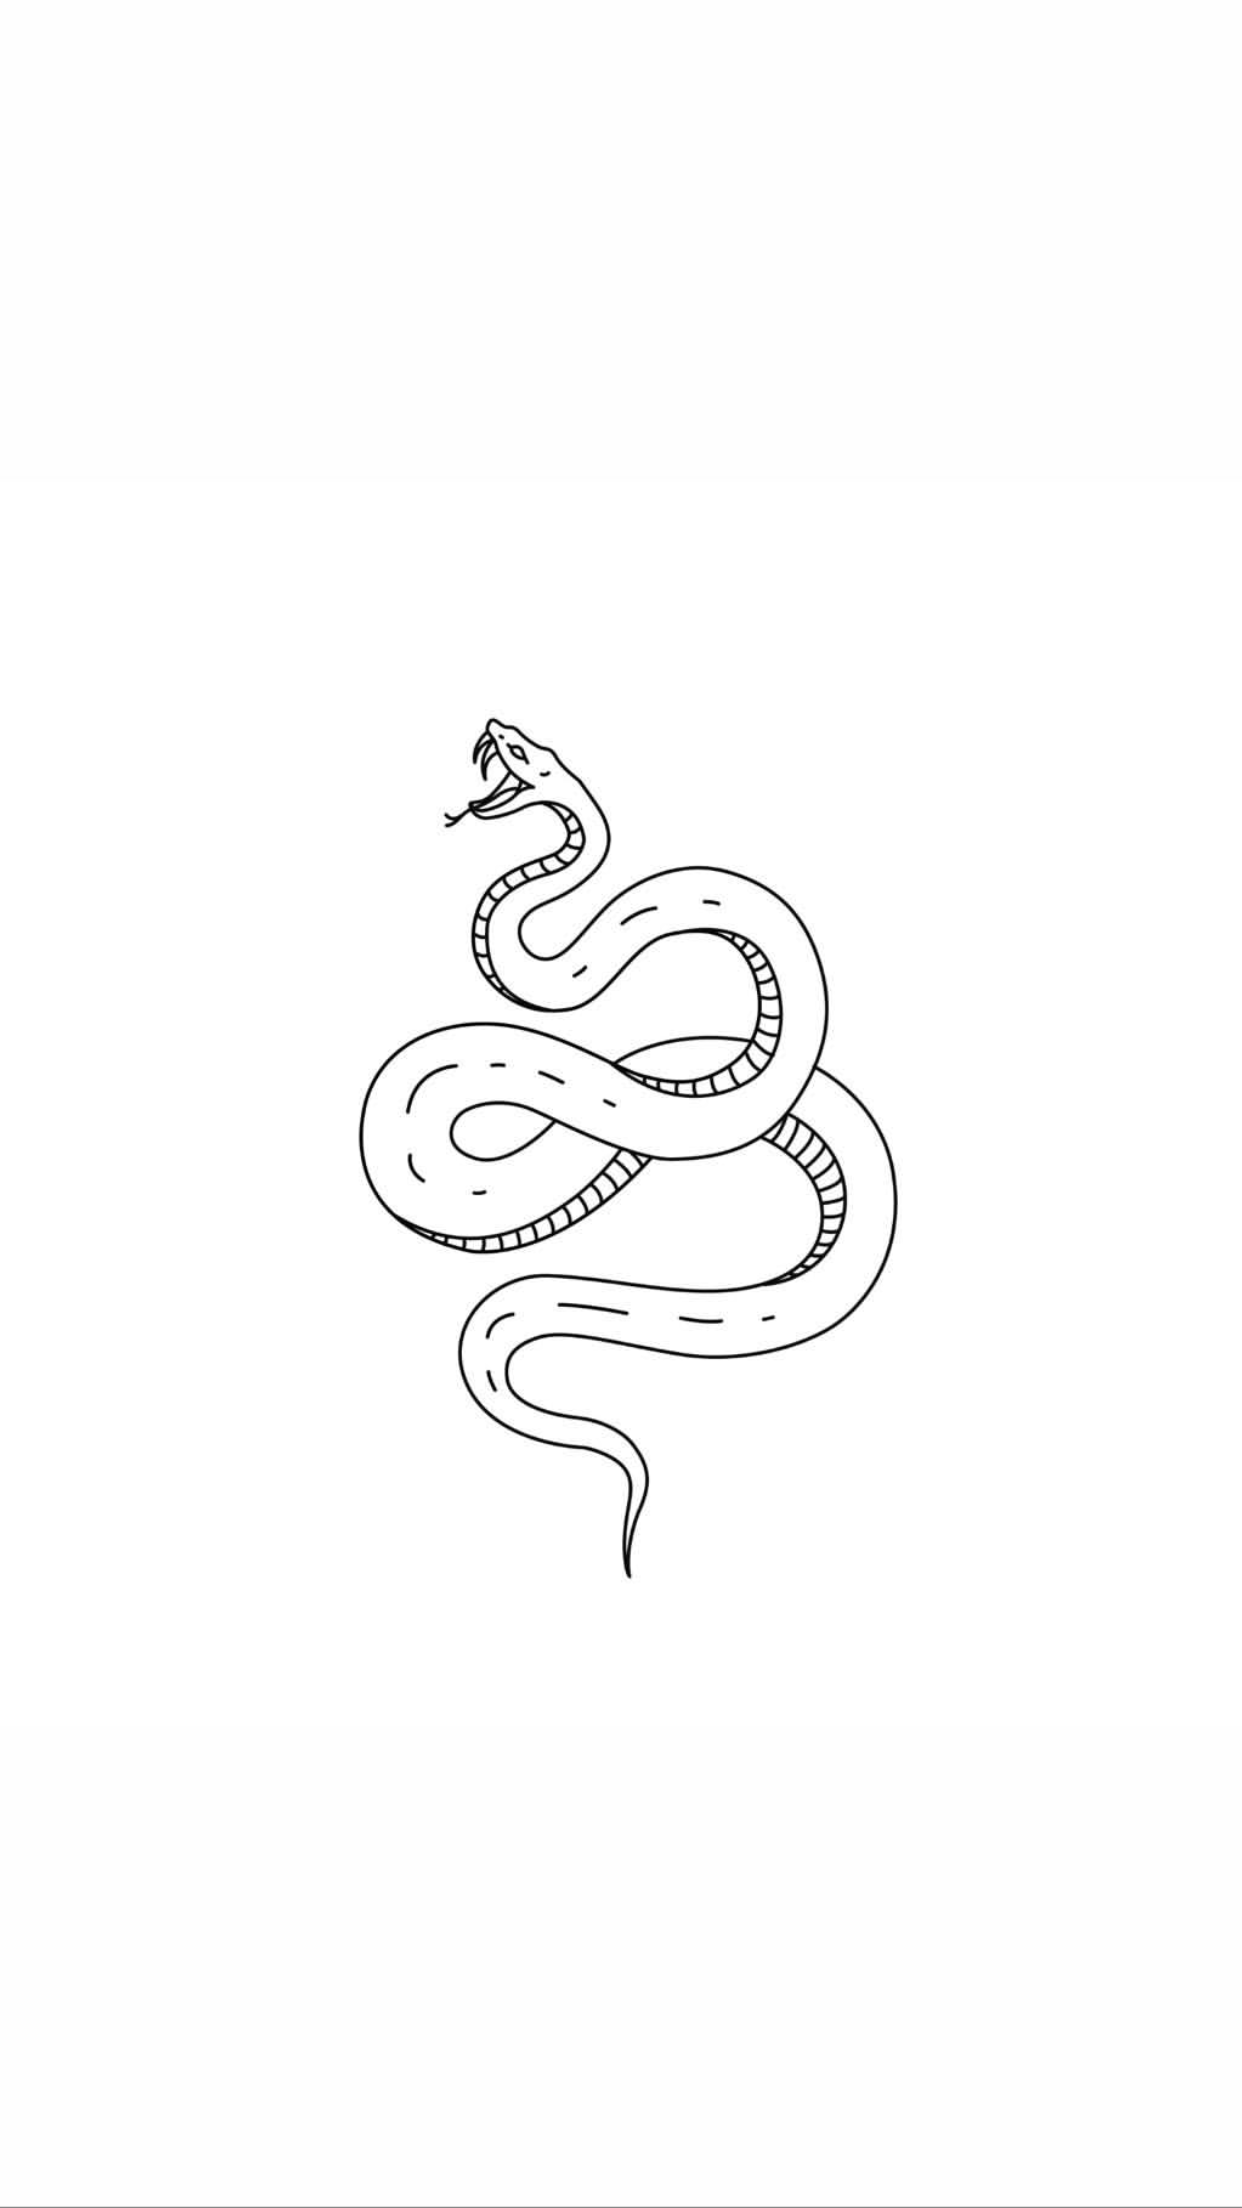 Тату эскиз змея Изображения – скачать бесплатно на Freepik